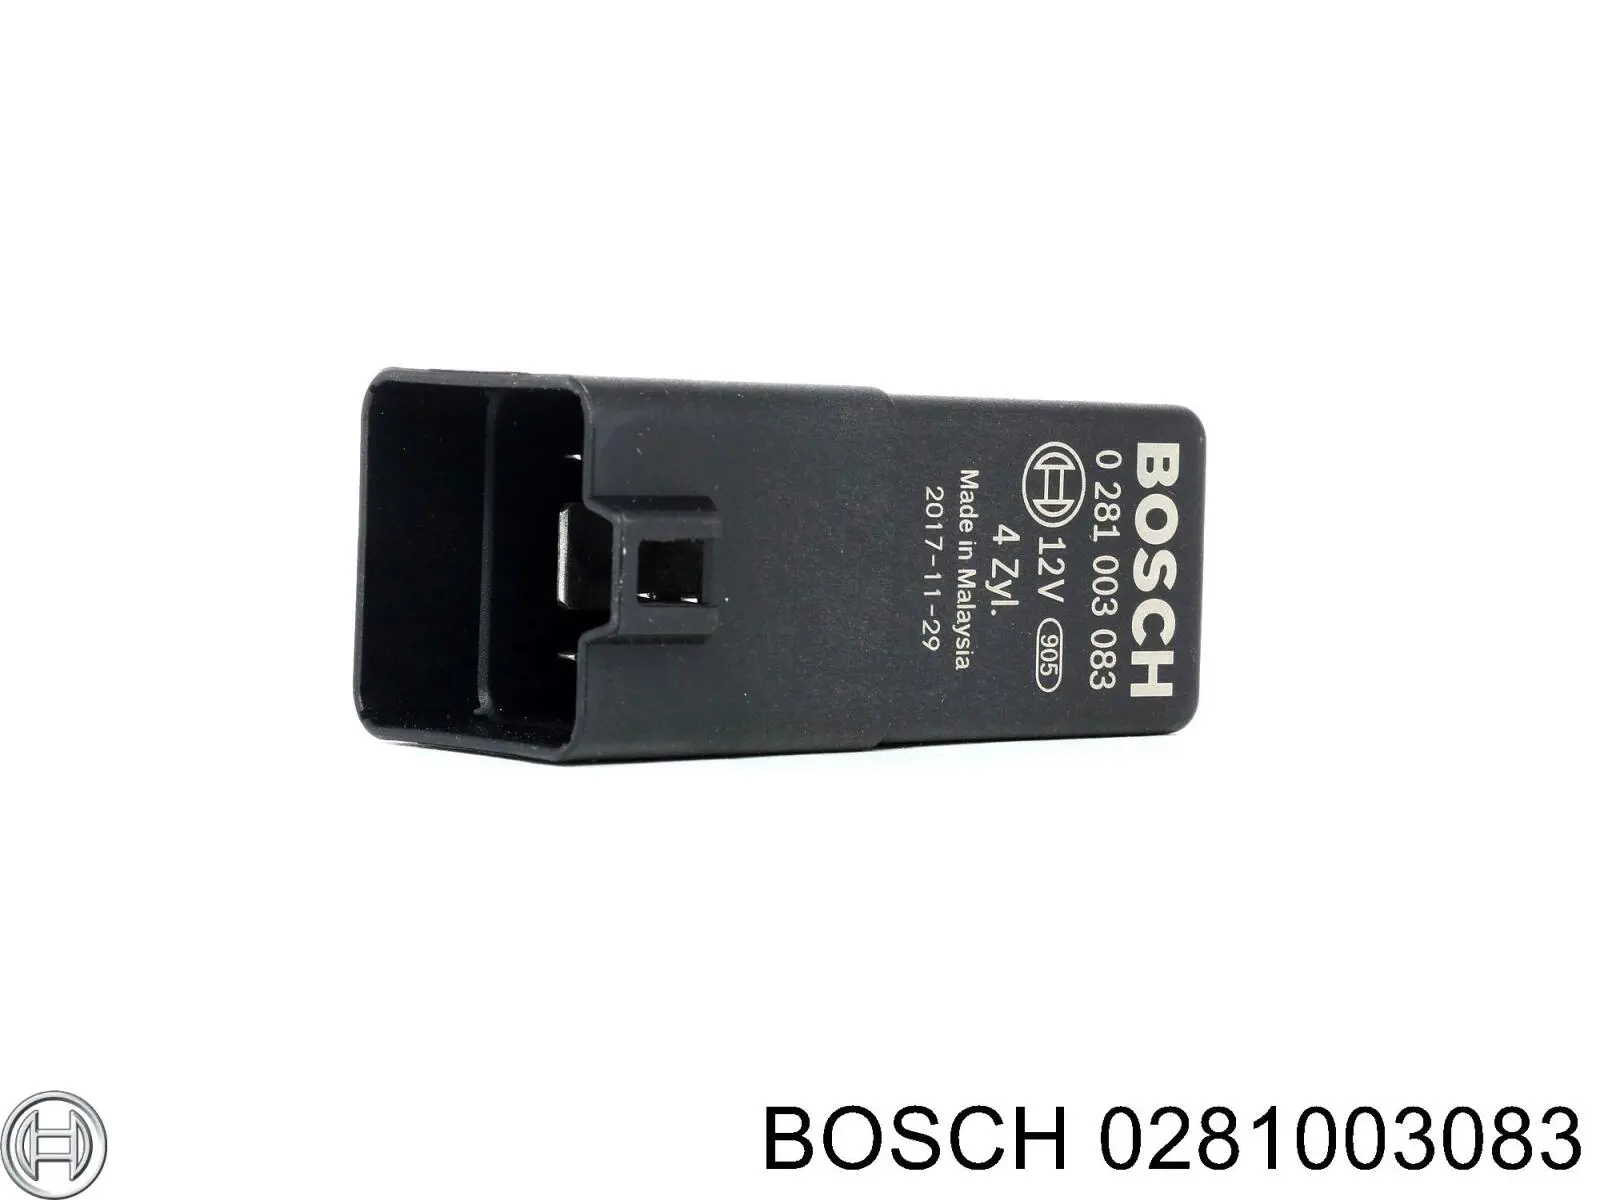 0281003083 Bosch relé de precalentamiento